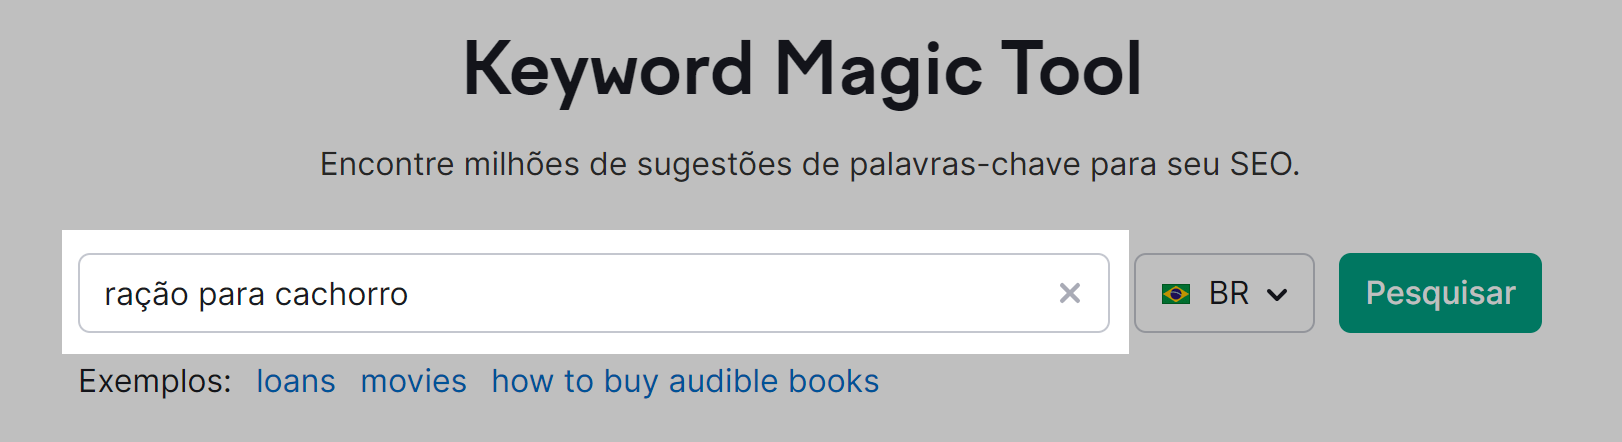 tela inicial da ferramenta keyword magic tool para pesquisa de palavras-chave